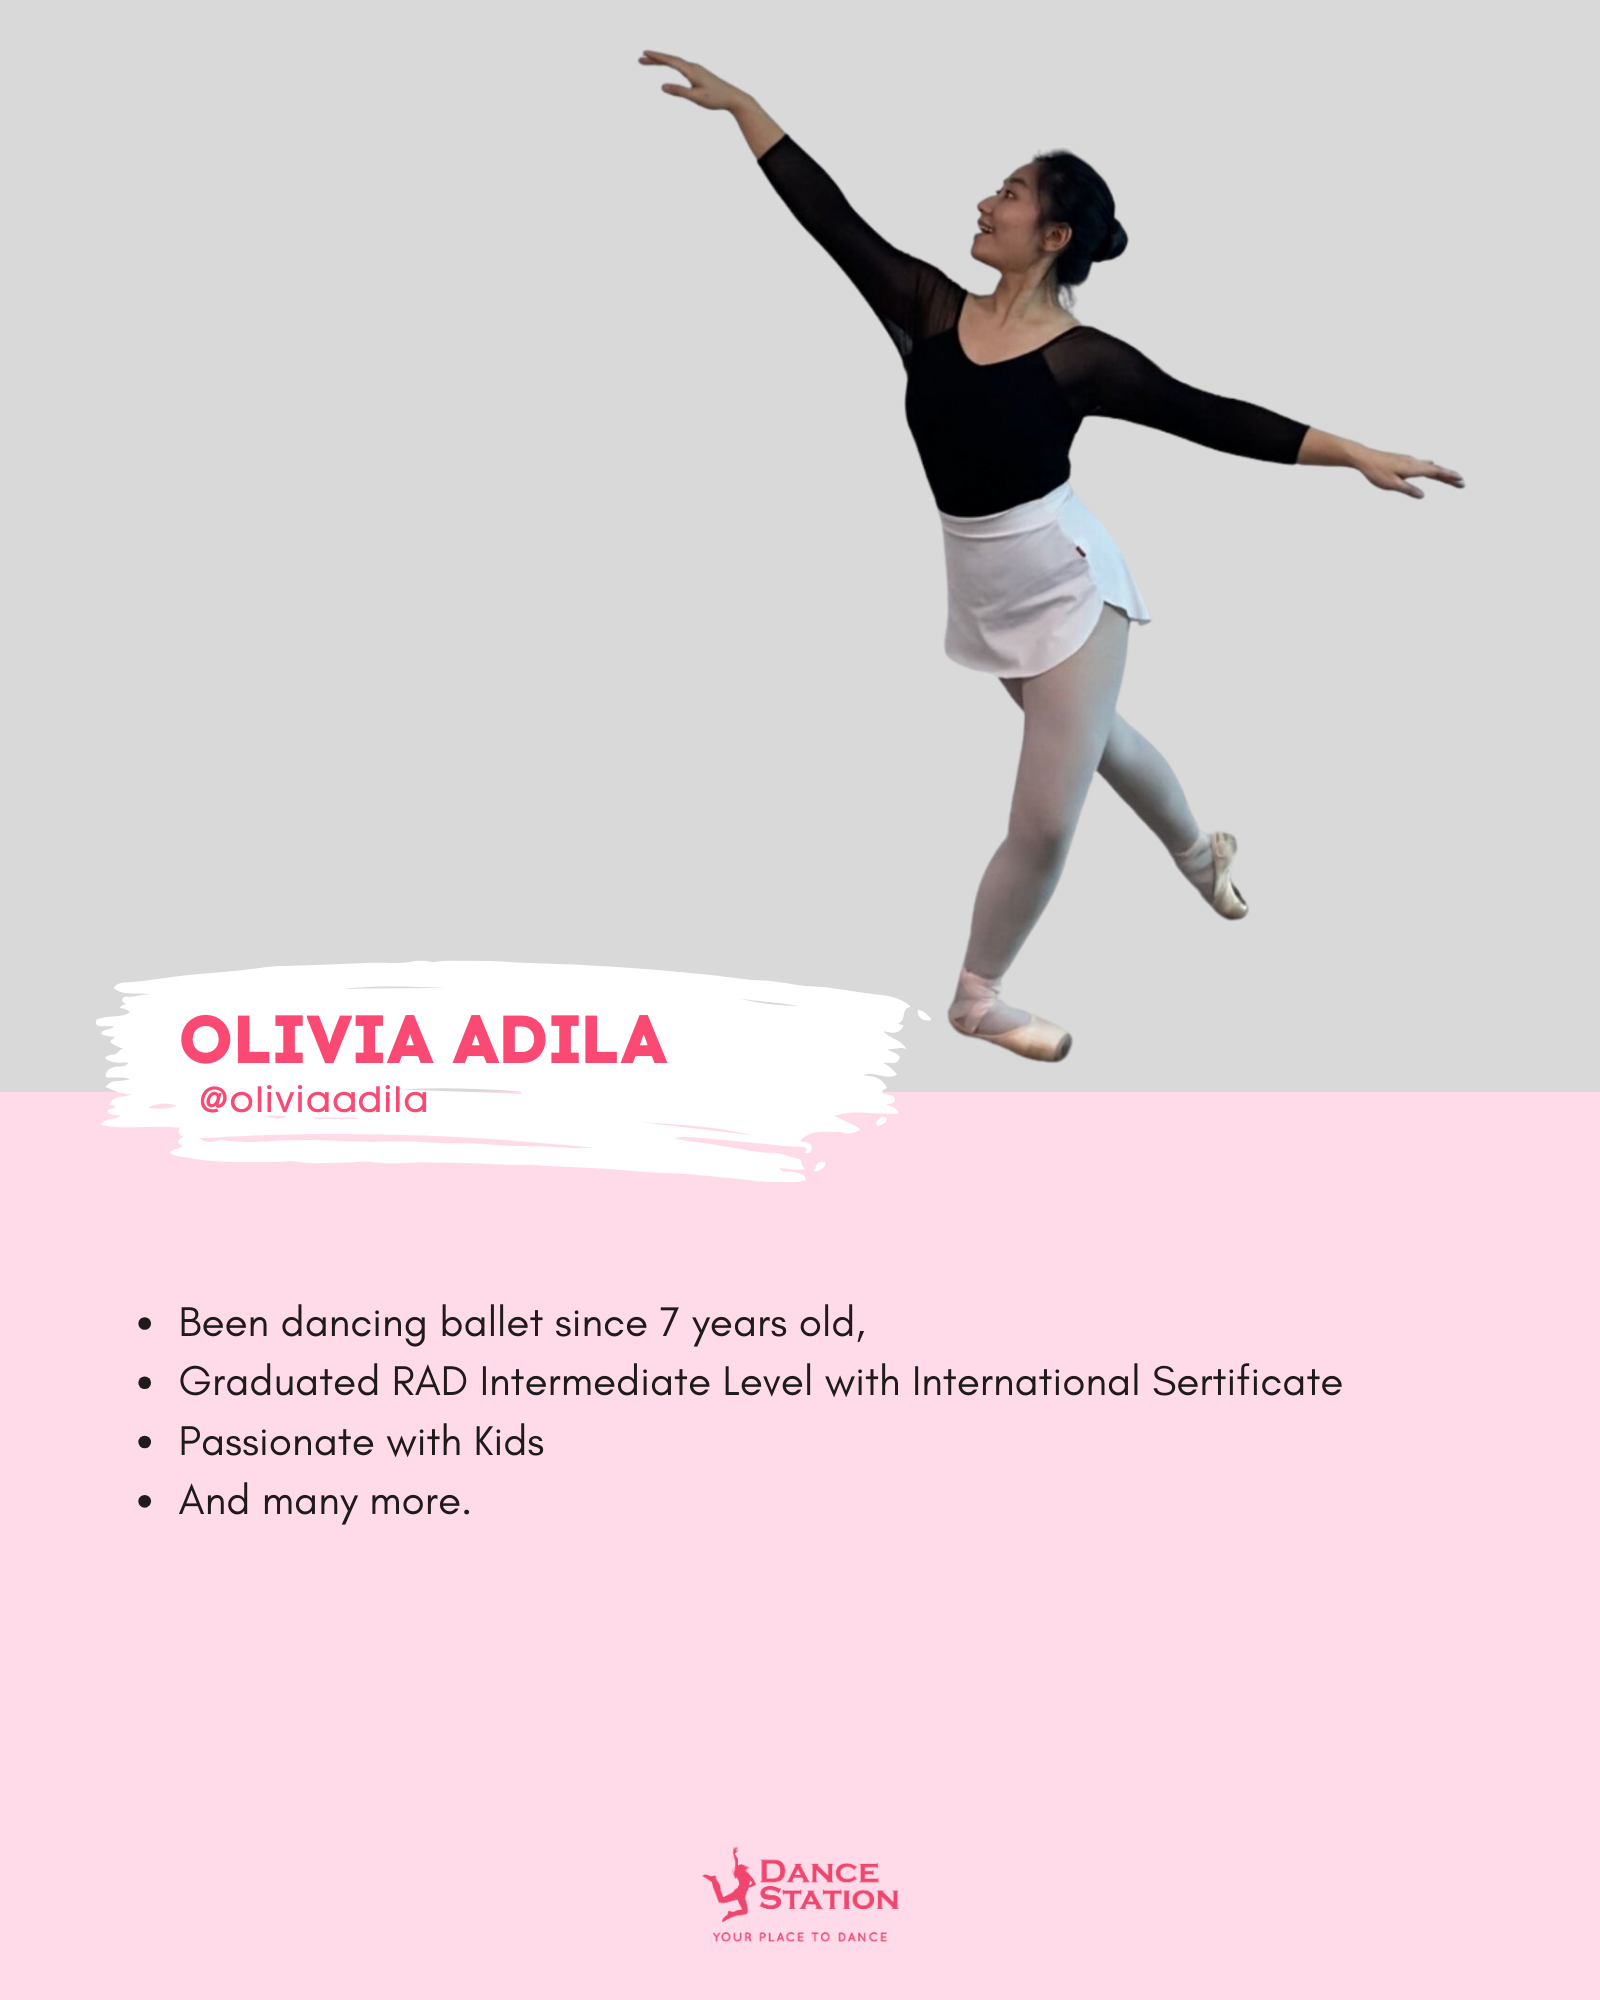 OLIVIA ADILA (MS. Olivia)